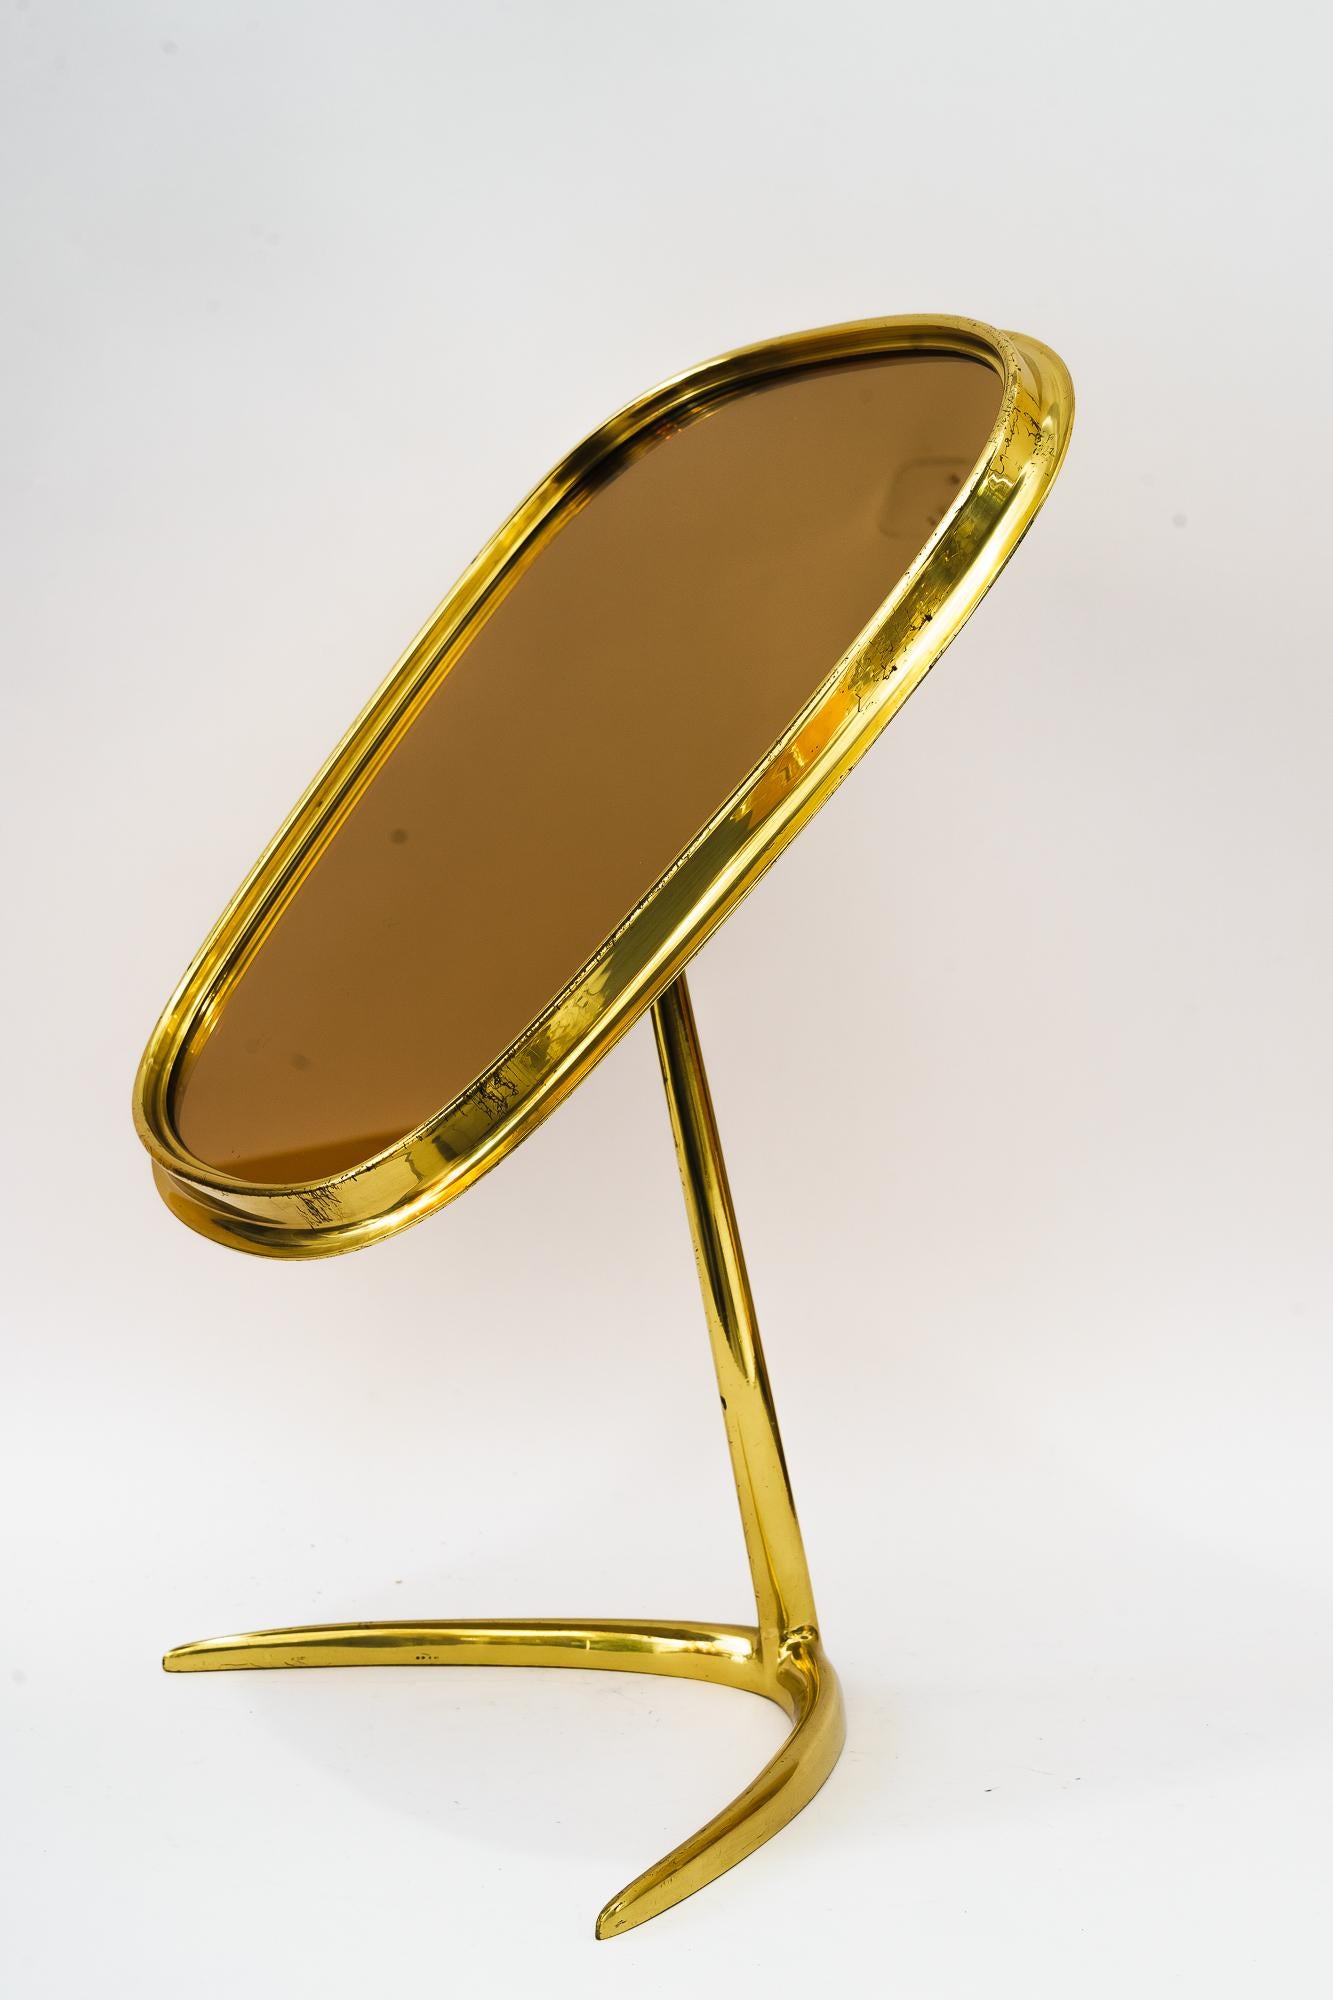 Mid-20th Century Brass Table Mirror Vereinigte Werkstätten Munich, Germany 1950s For Sale